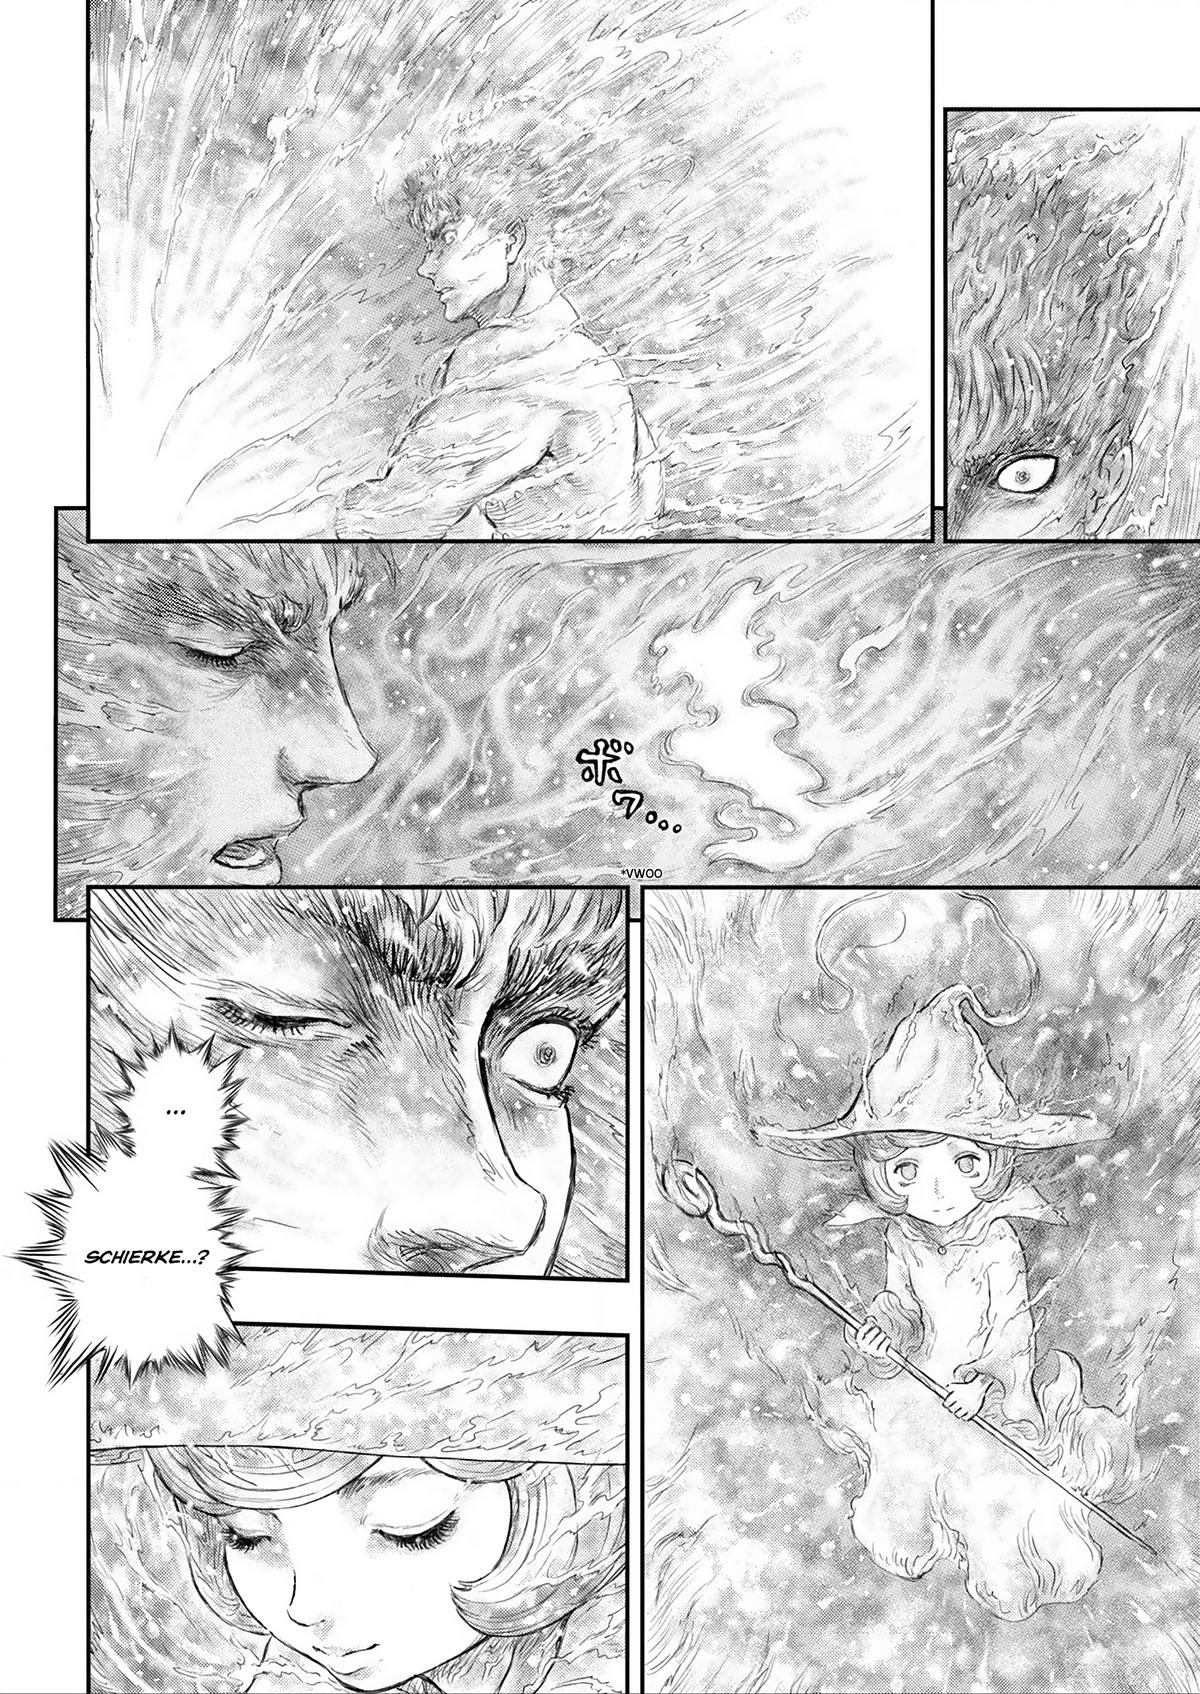 Berserk Manga Chapter 376 image 03